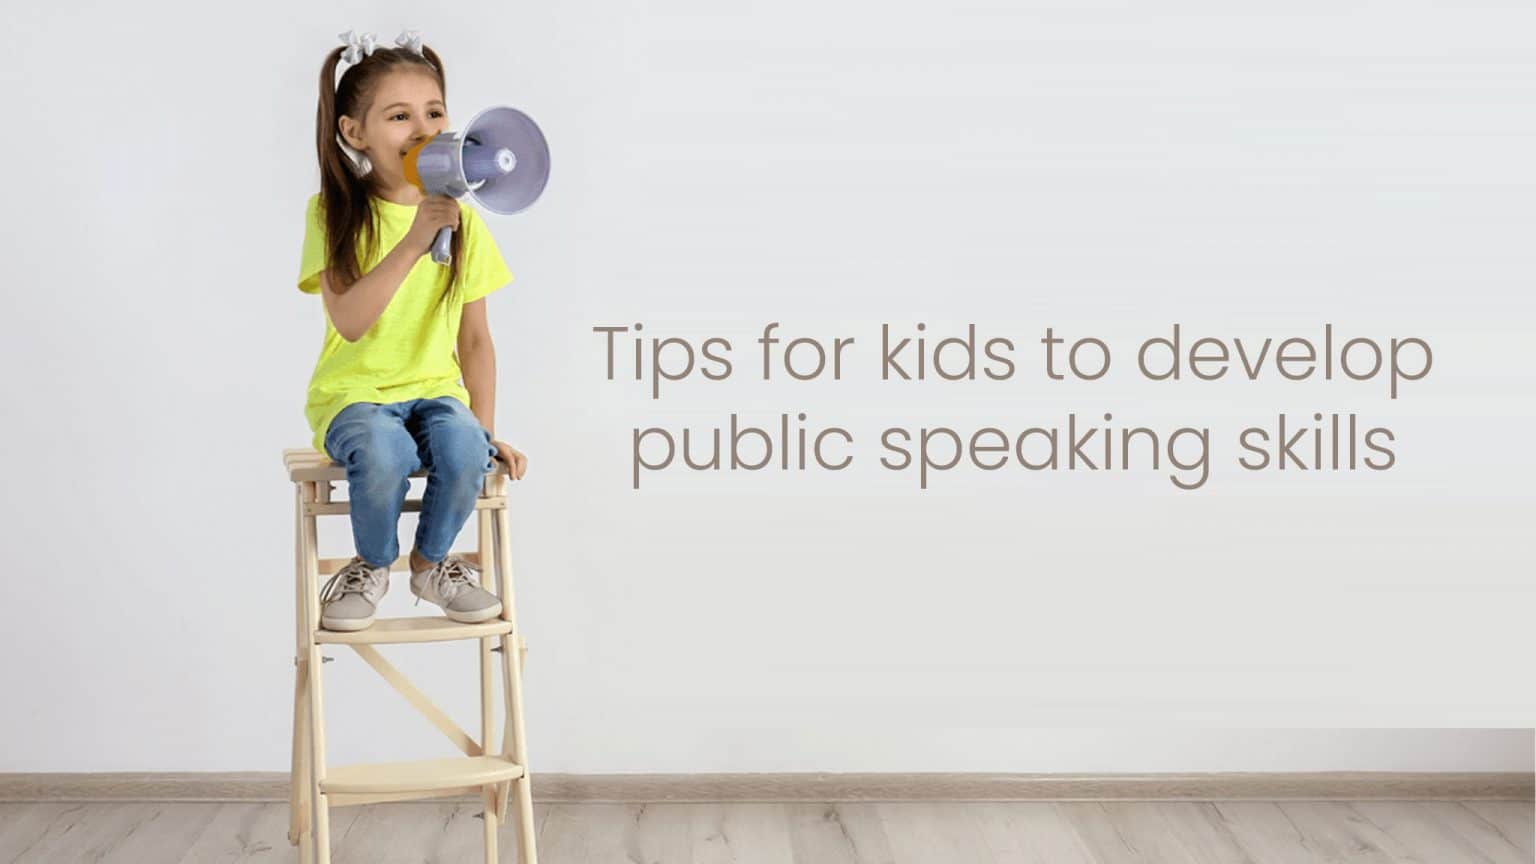 speaking skills for kids